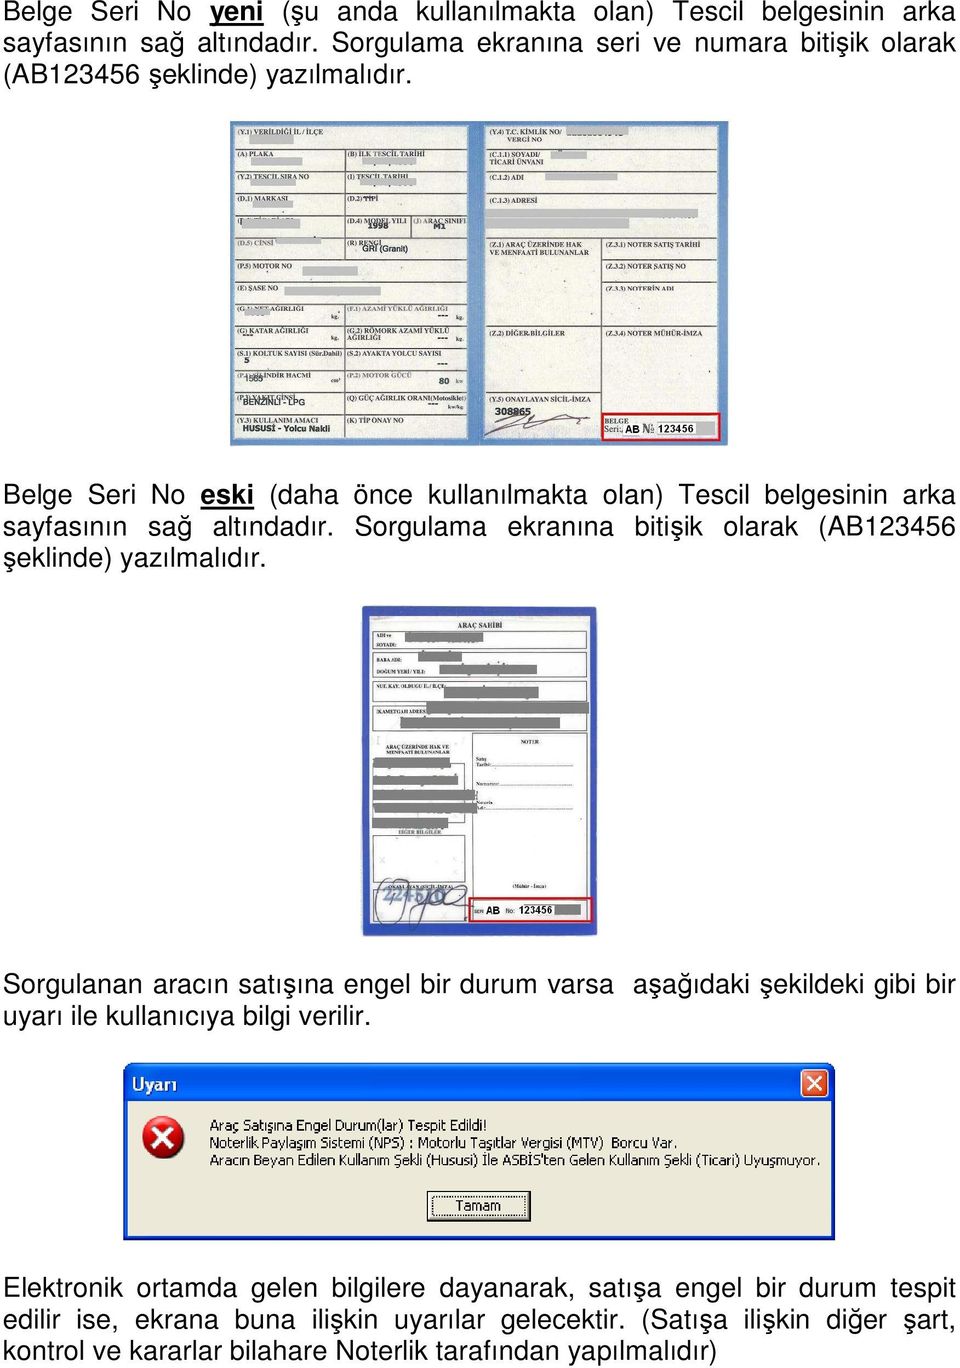 Belge Seri No eski (daha önce kullanılmakta olan) Tescil belgesinin arka sayfasının sağ altındadır. Sorgulama ekranına bitişik olarak (AB123456 şeklinde) yazılmalıdır.